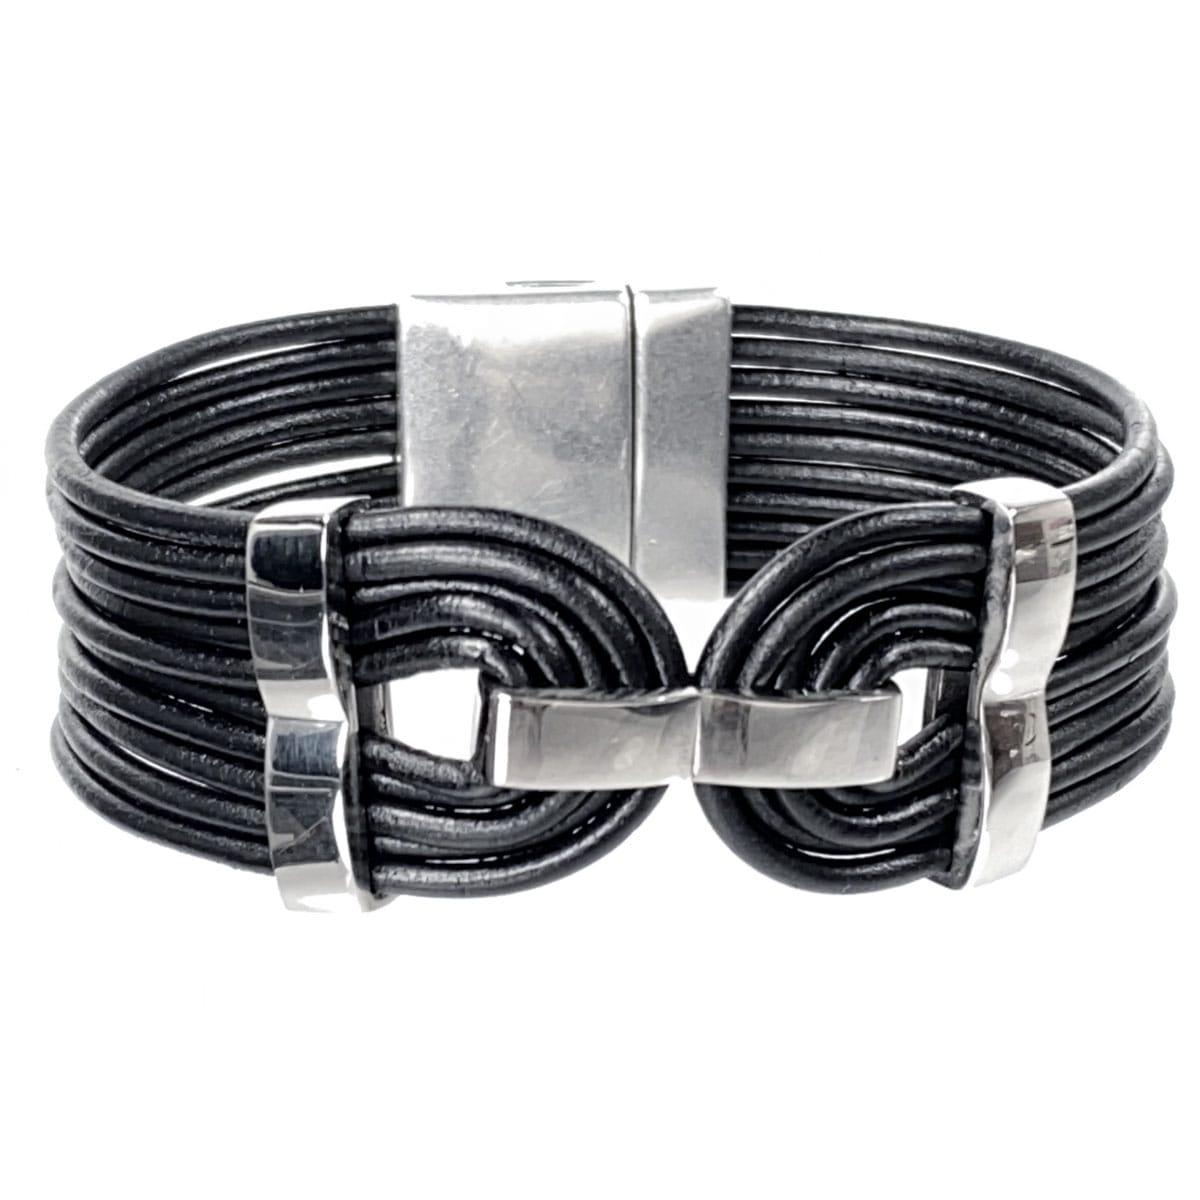 Bracelet Kit - Multi Strand Leather Bracelet